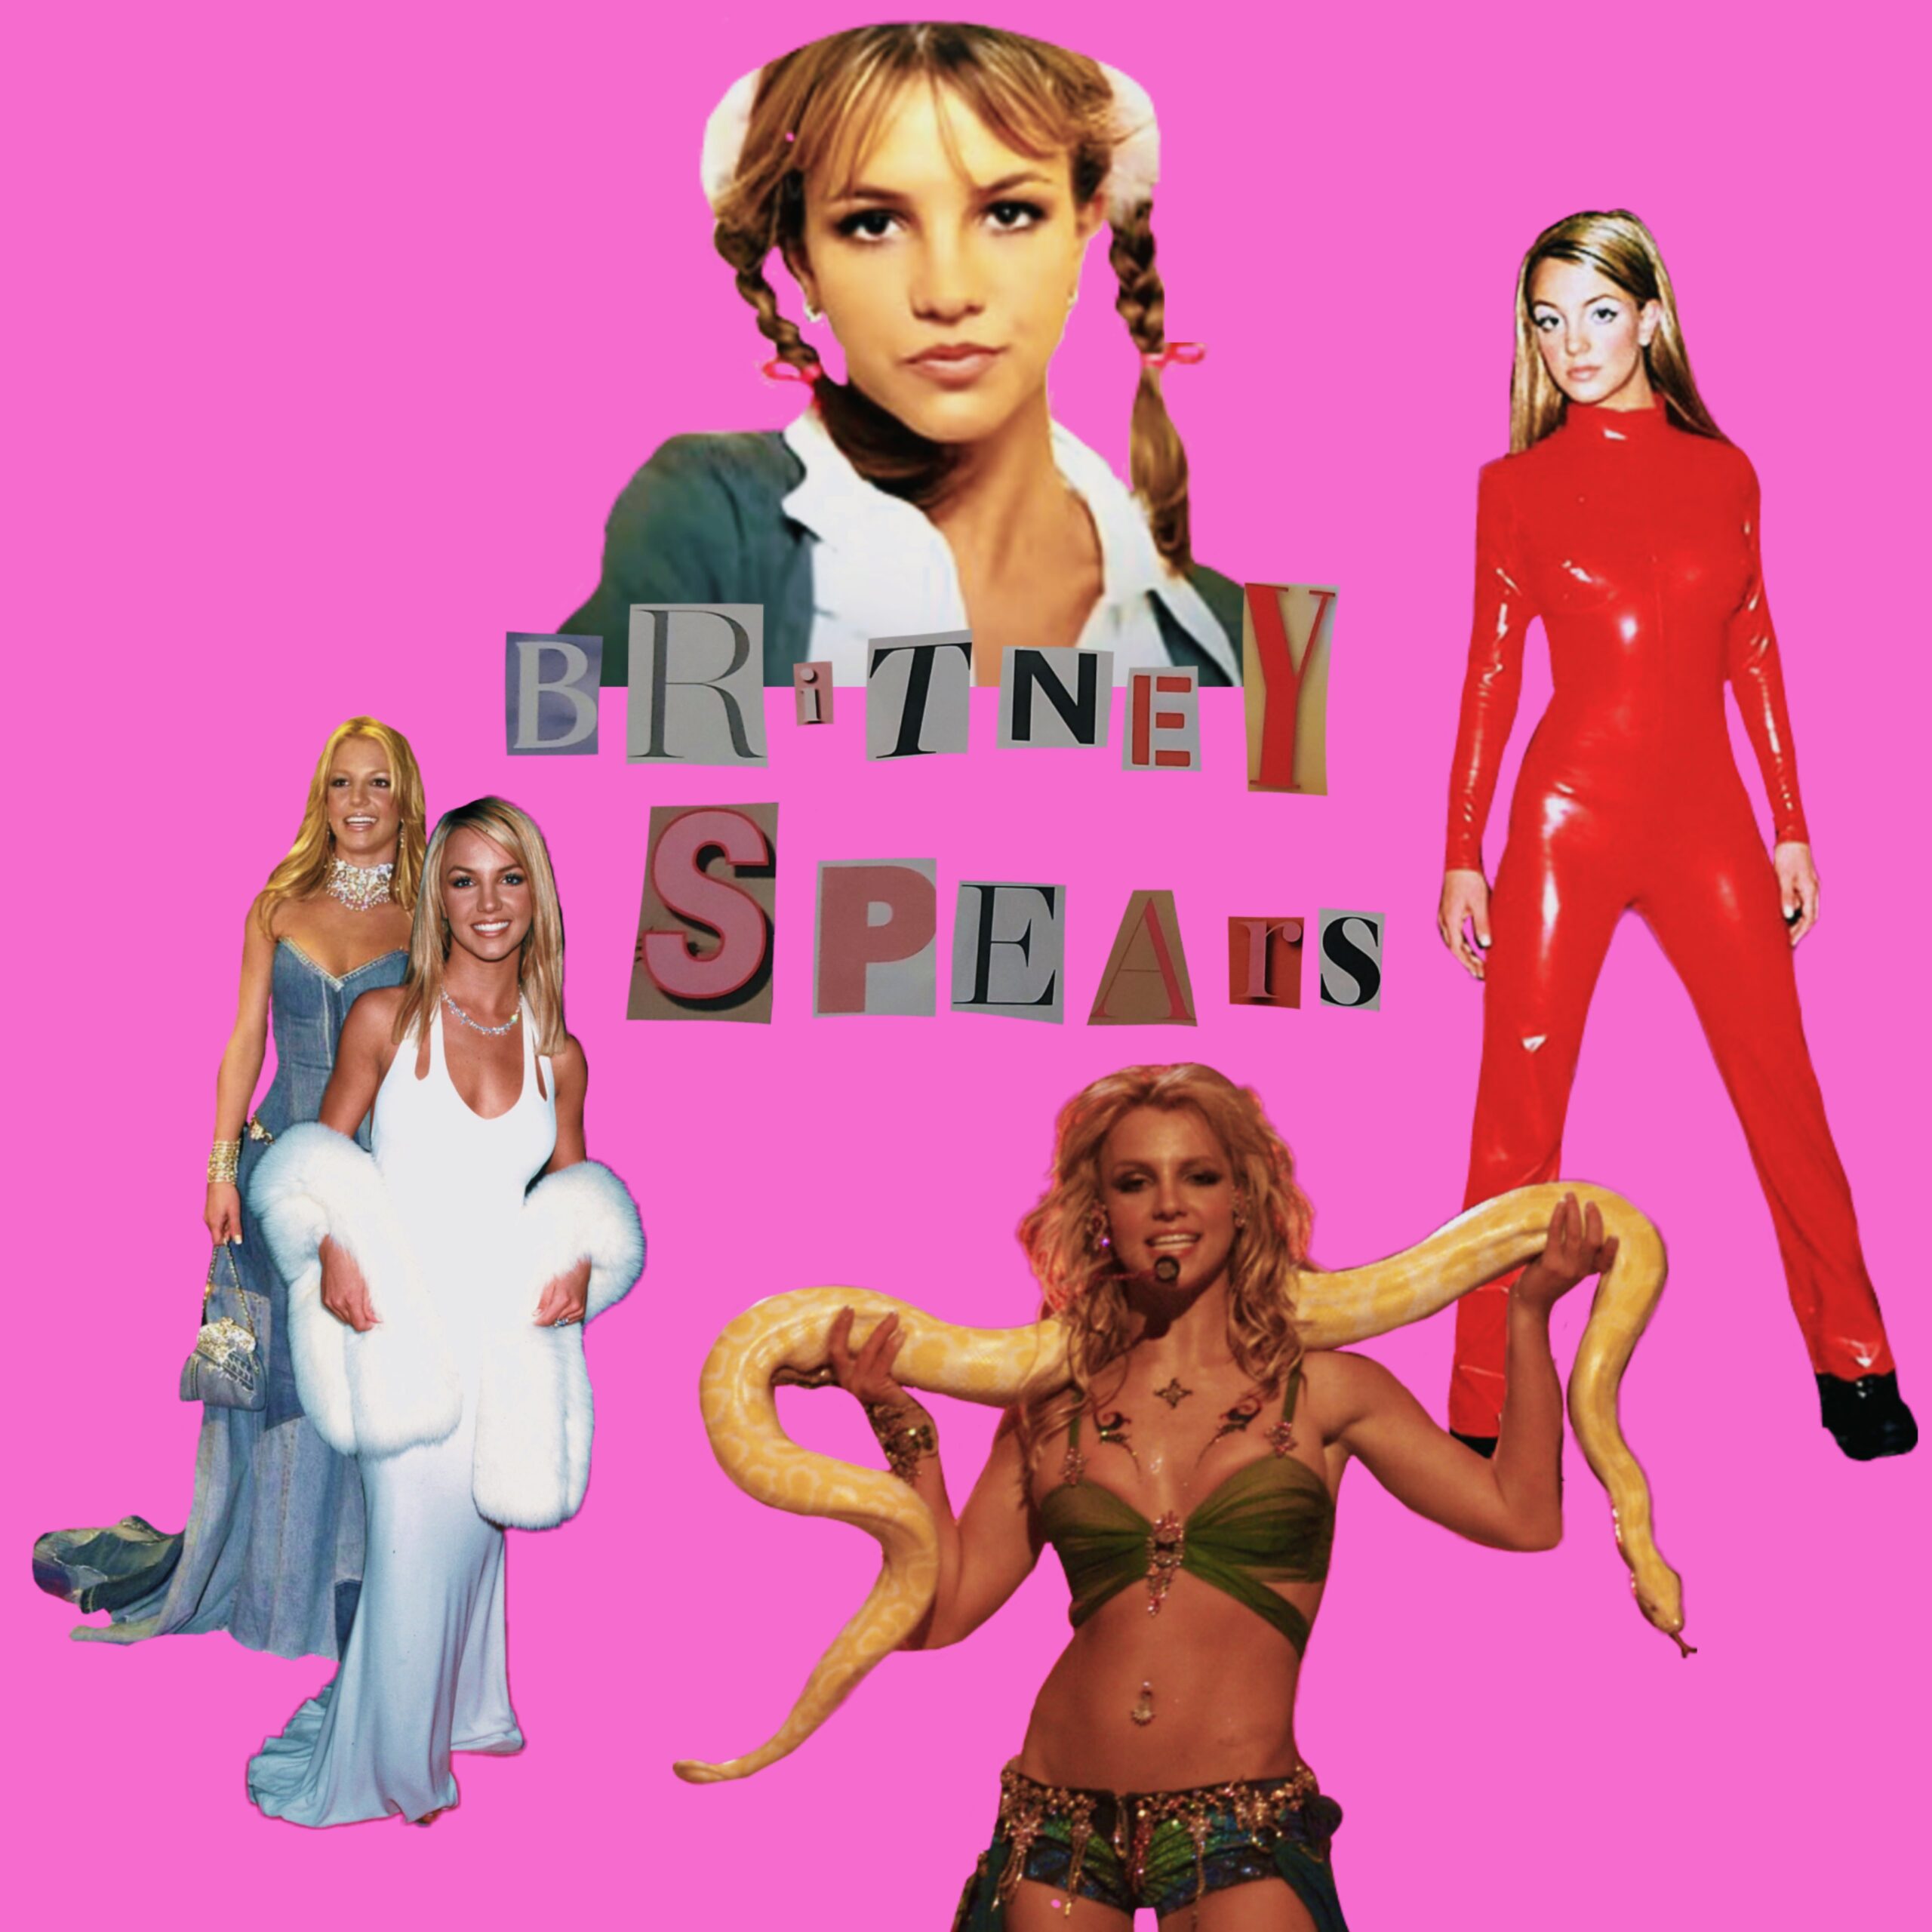 Britney Spears e i suoi look che hanno fatto sognare intere generazioni, dalla tutina rossa al vestito di jeans.